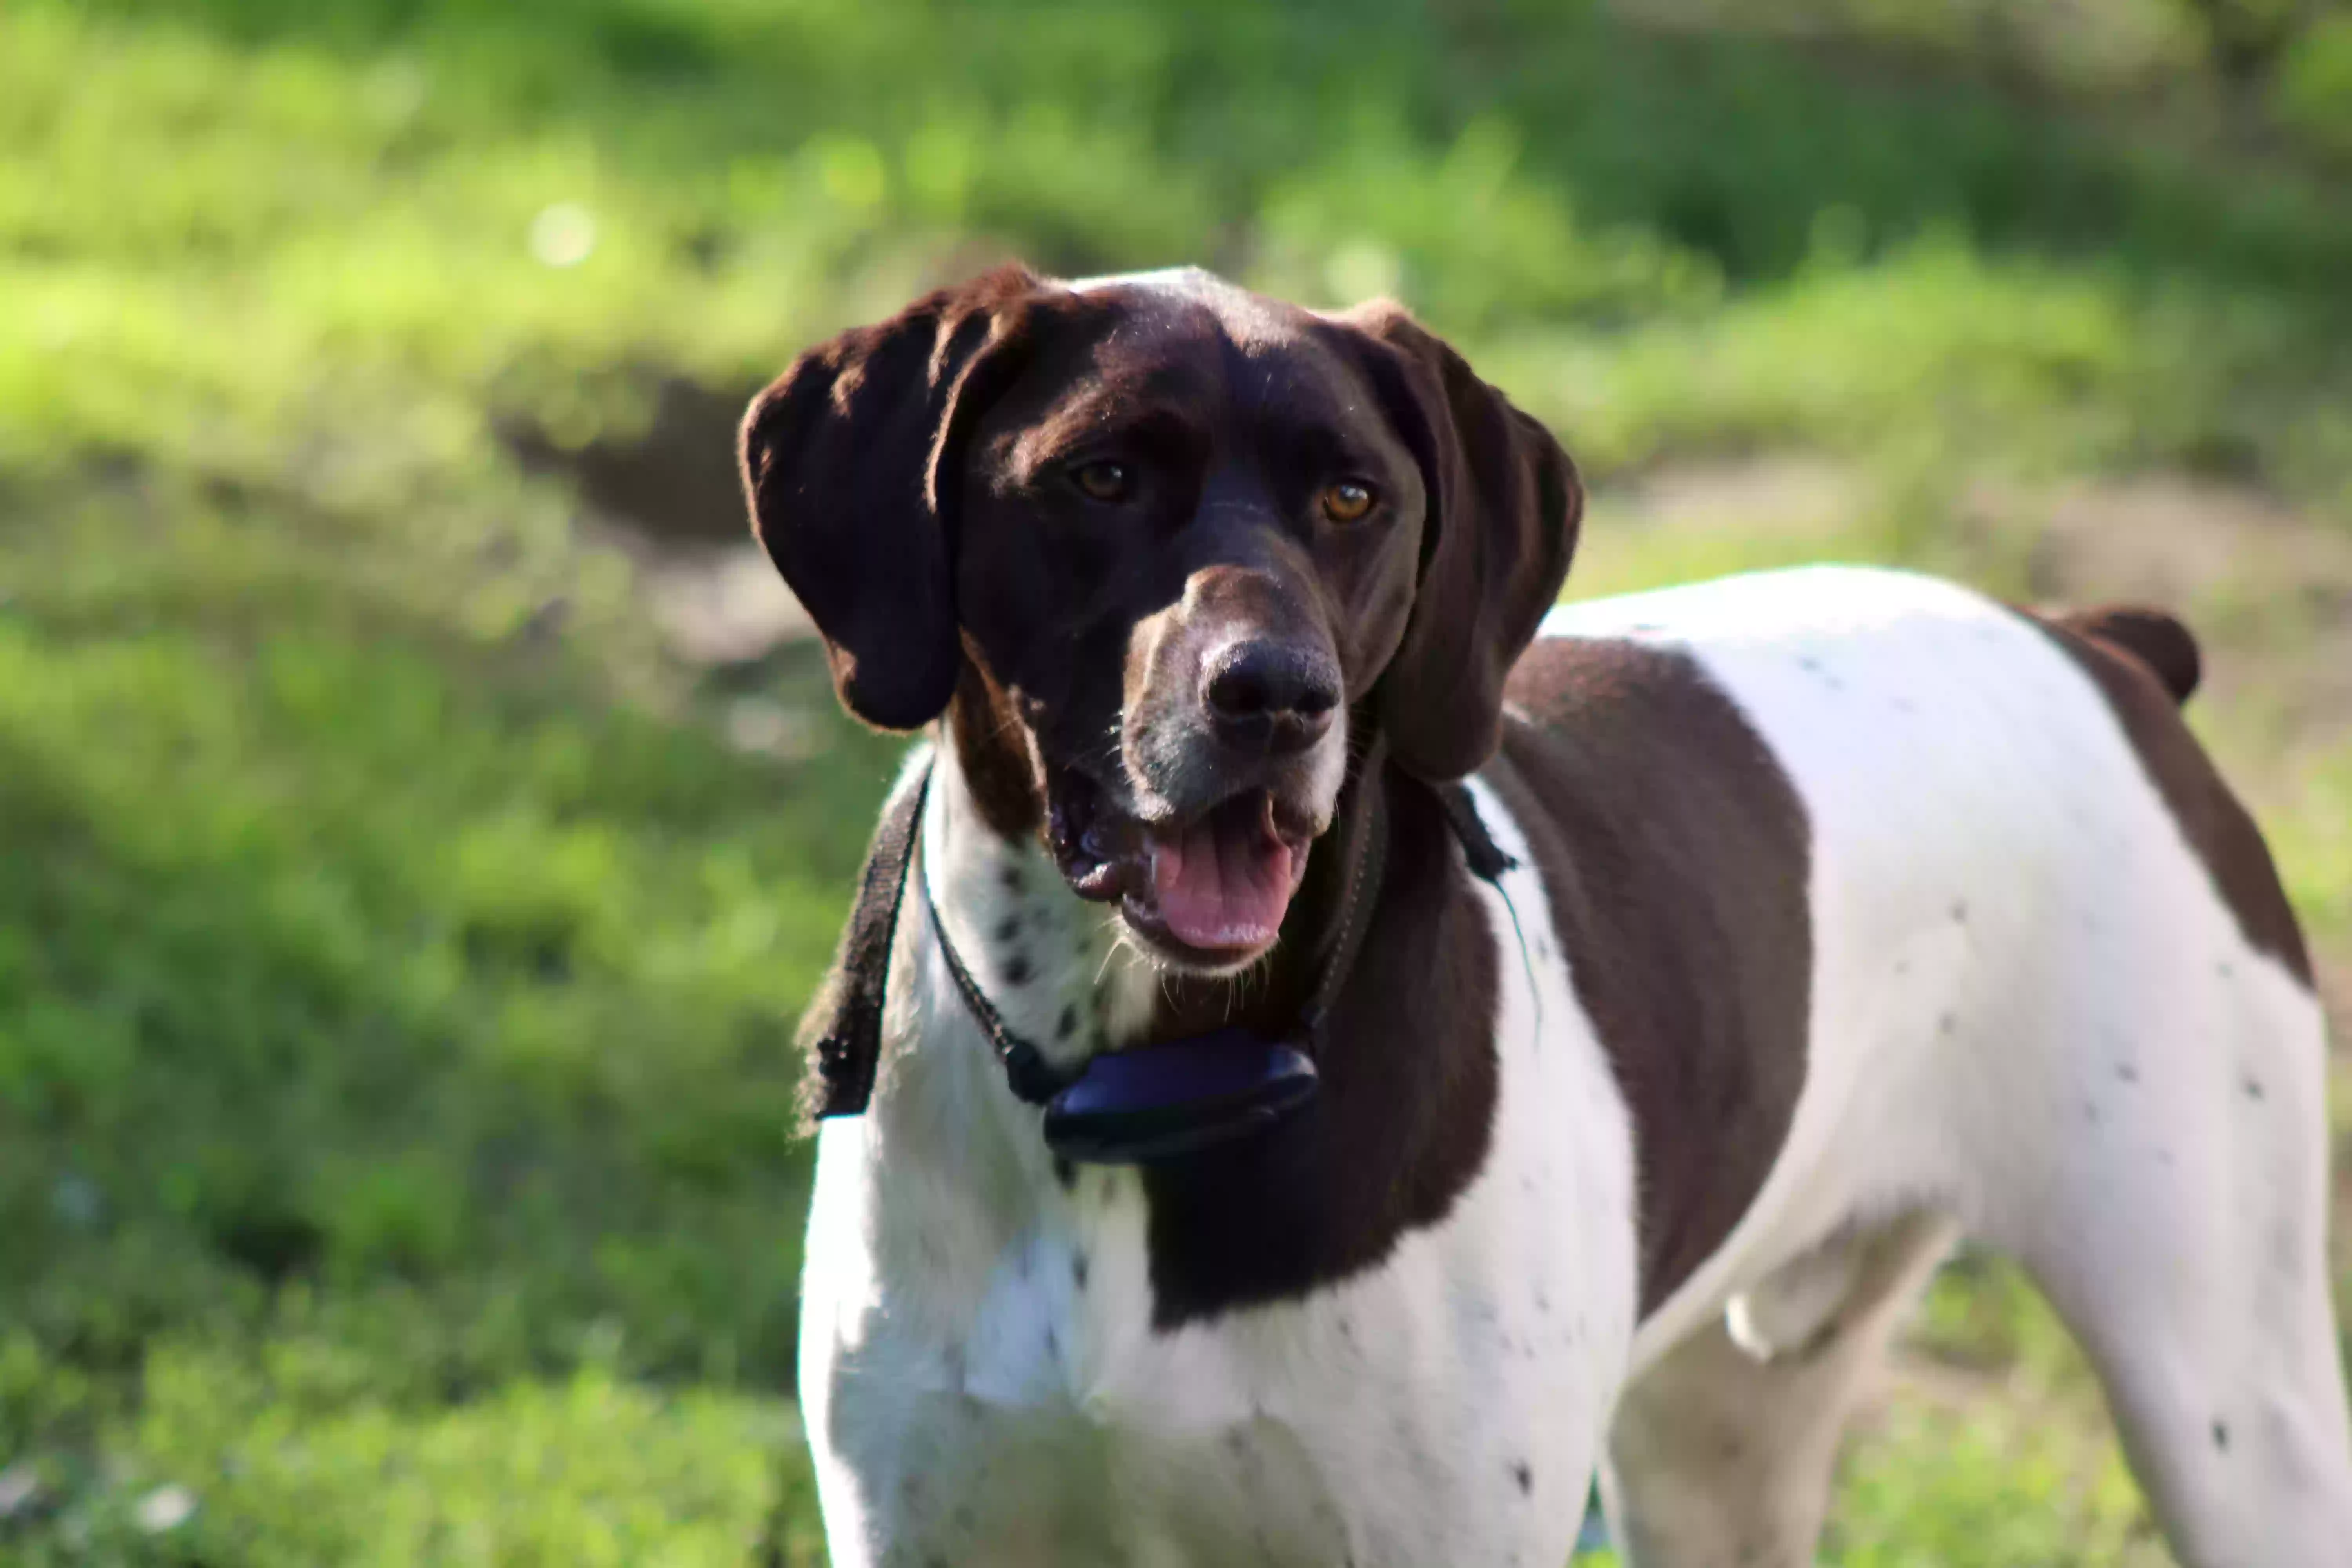 adoptable Dog in Scranton,PA named Tucker